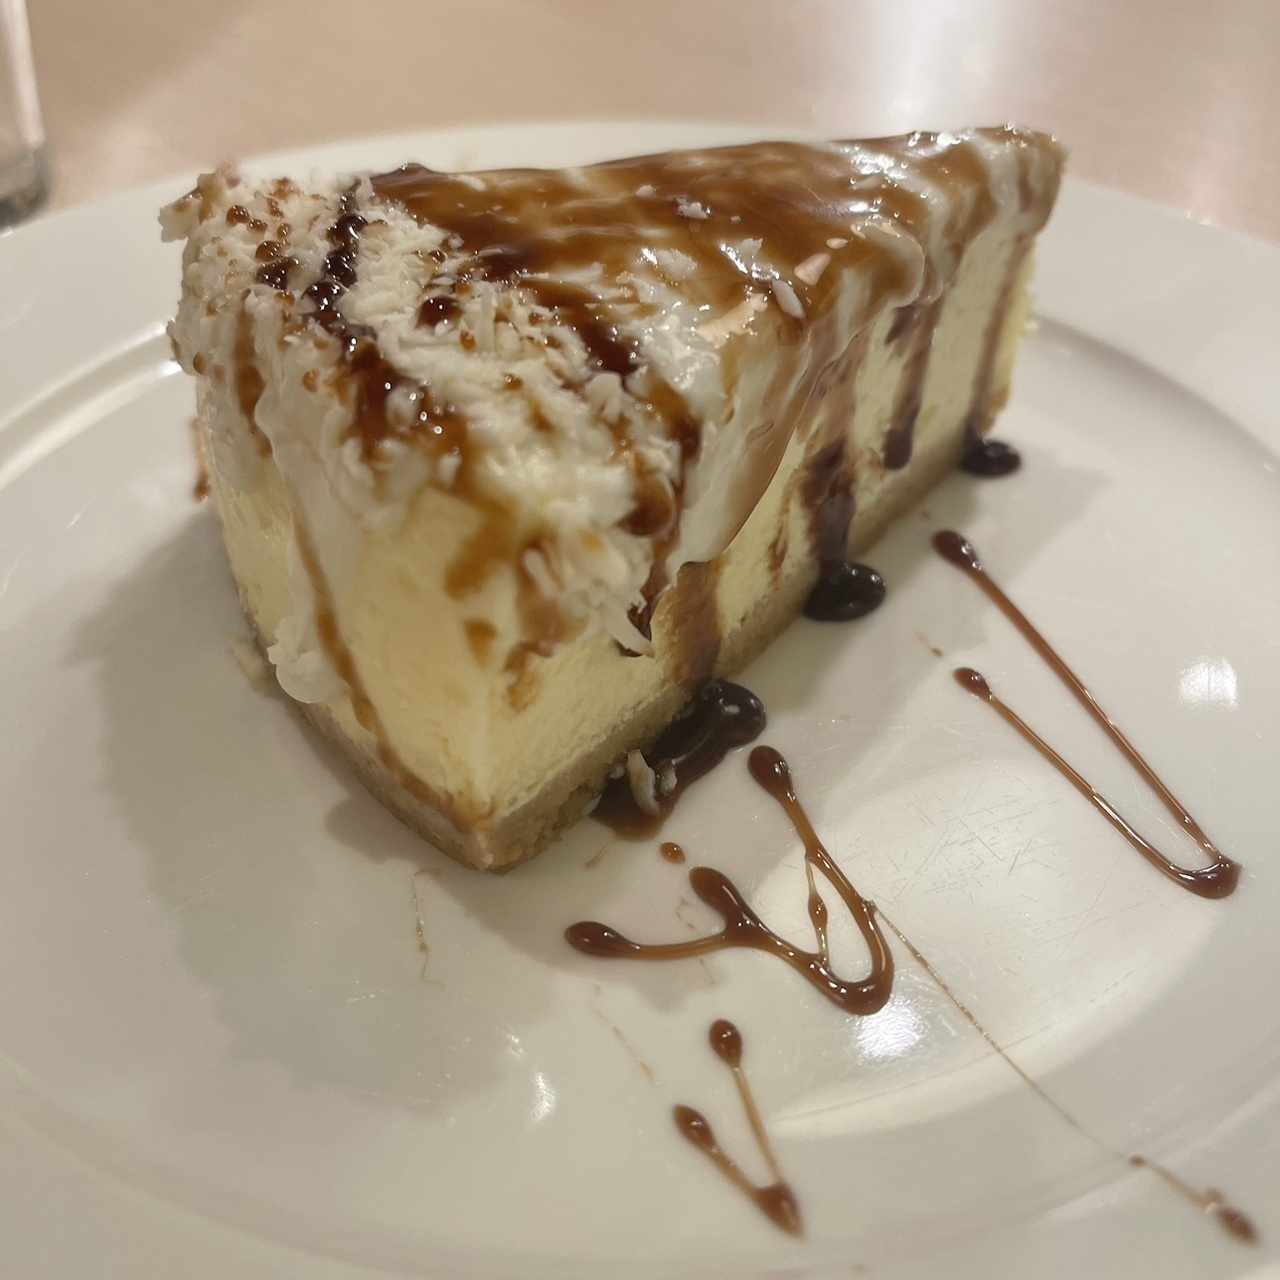 Cheesecake de Coco